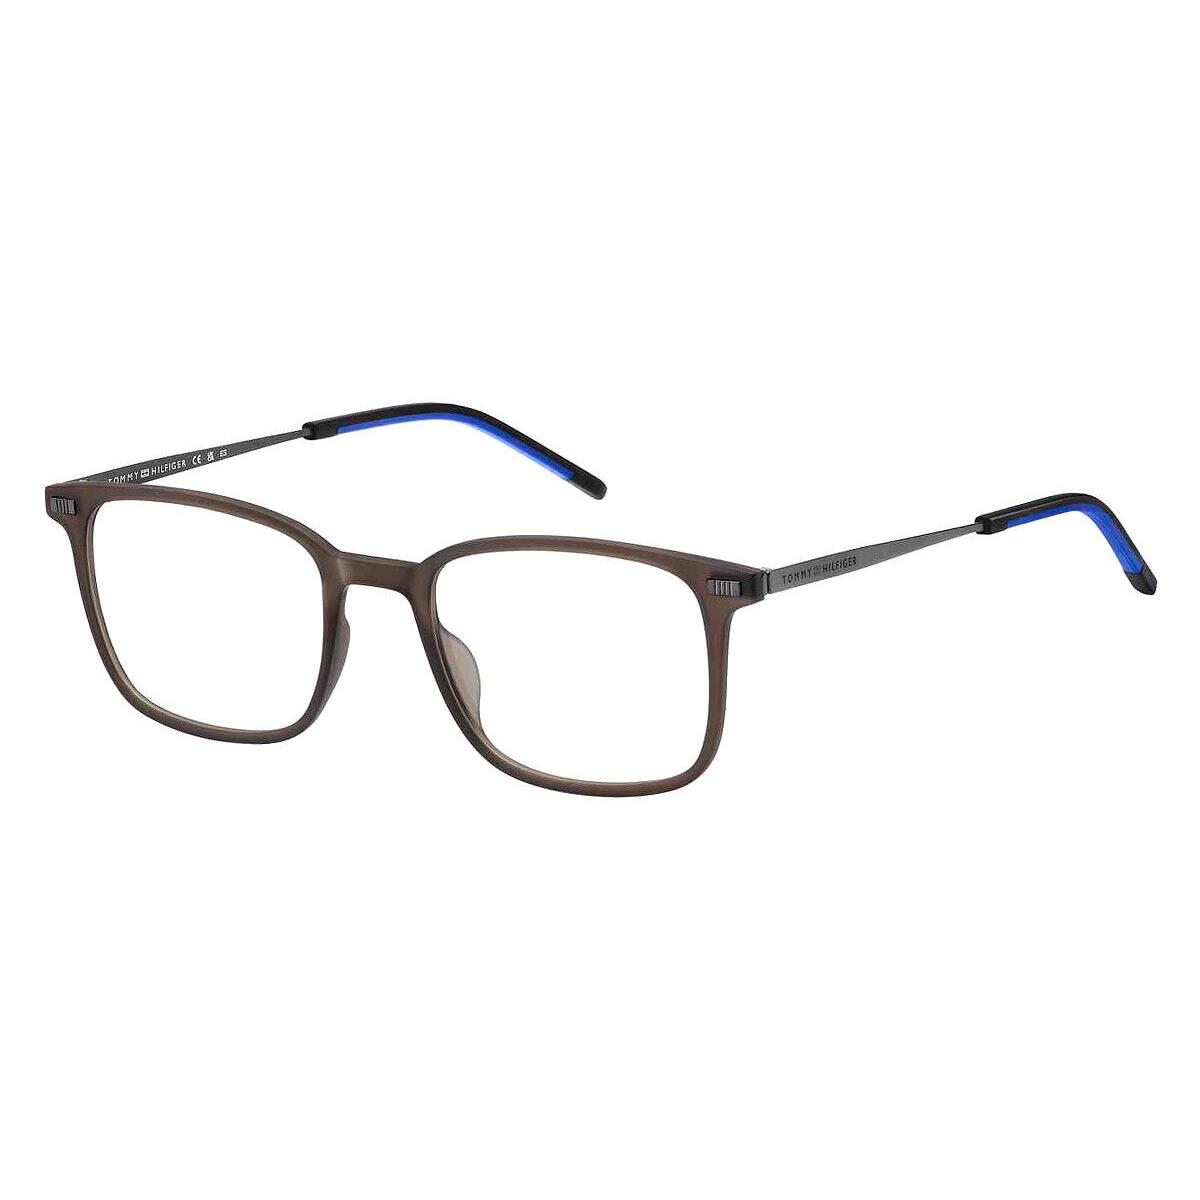 Tommy Hilfiger Thf Eyeglasses Men Matte Brown 50mm - Frame: Matte Brown, Lens: Demo